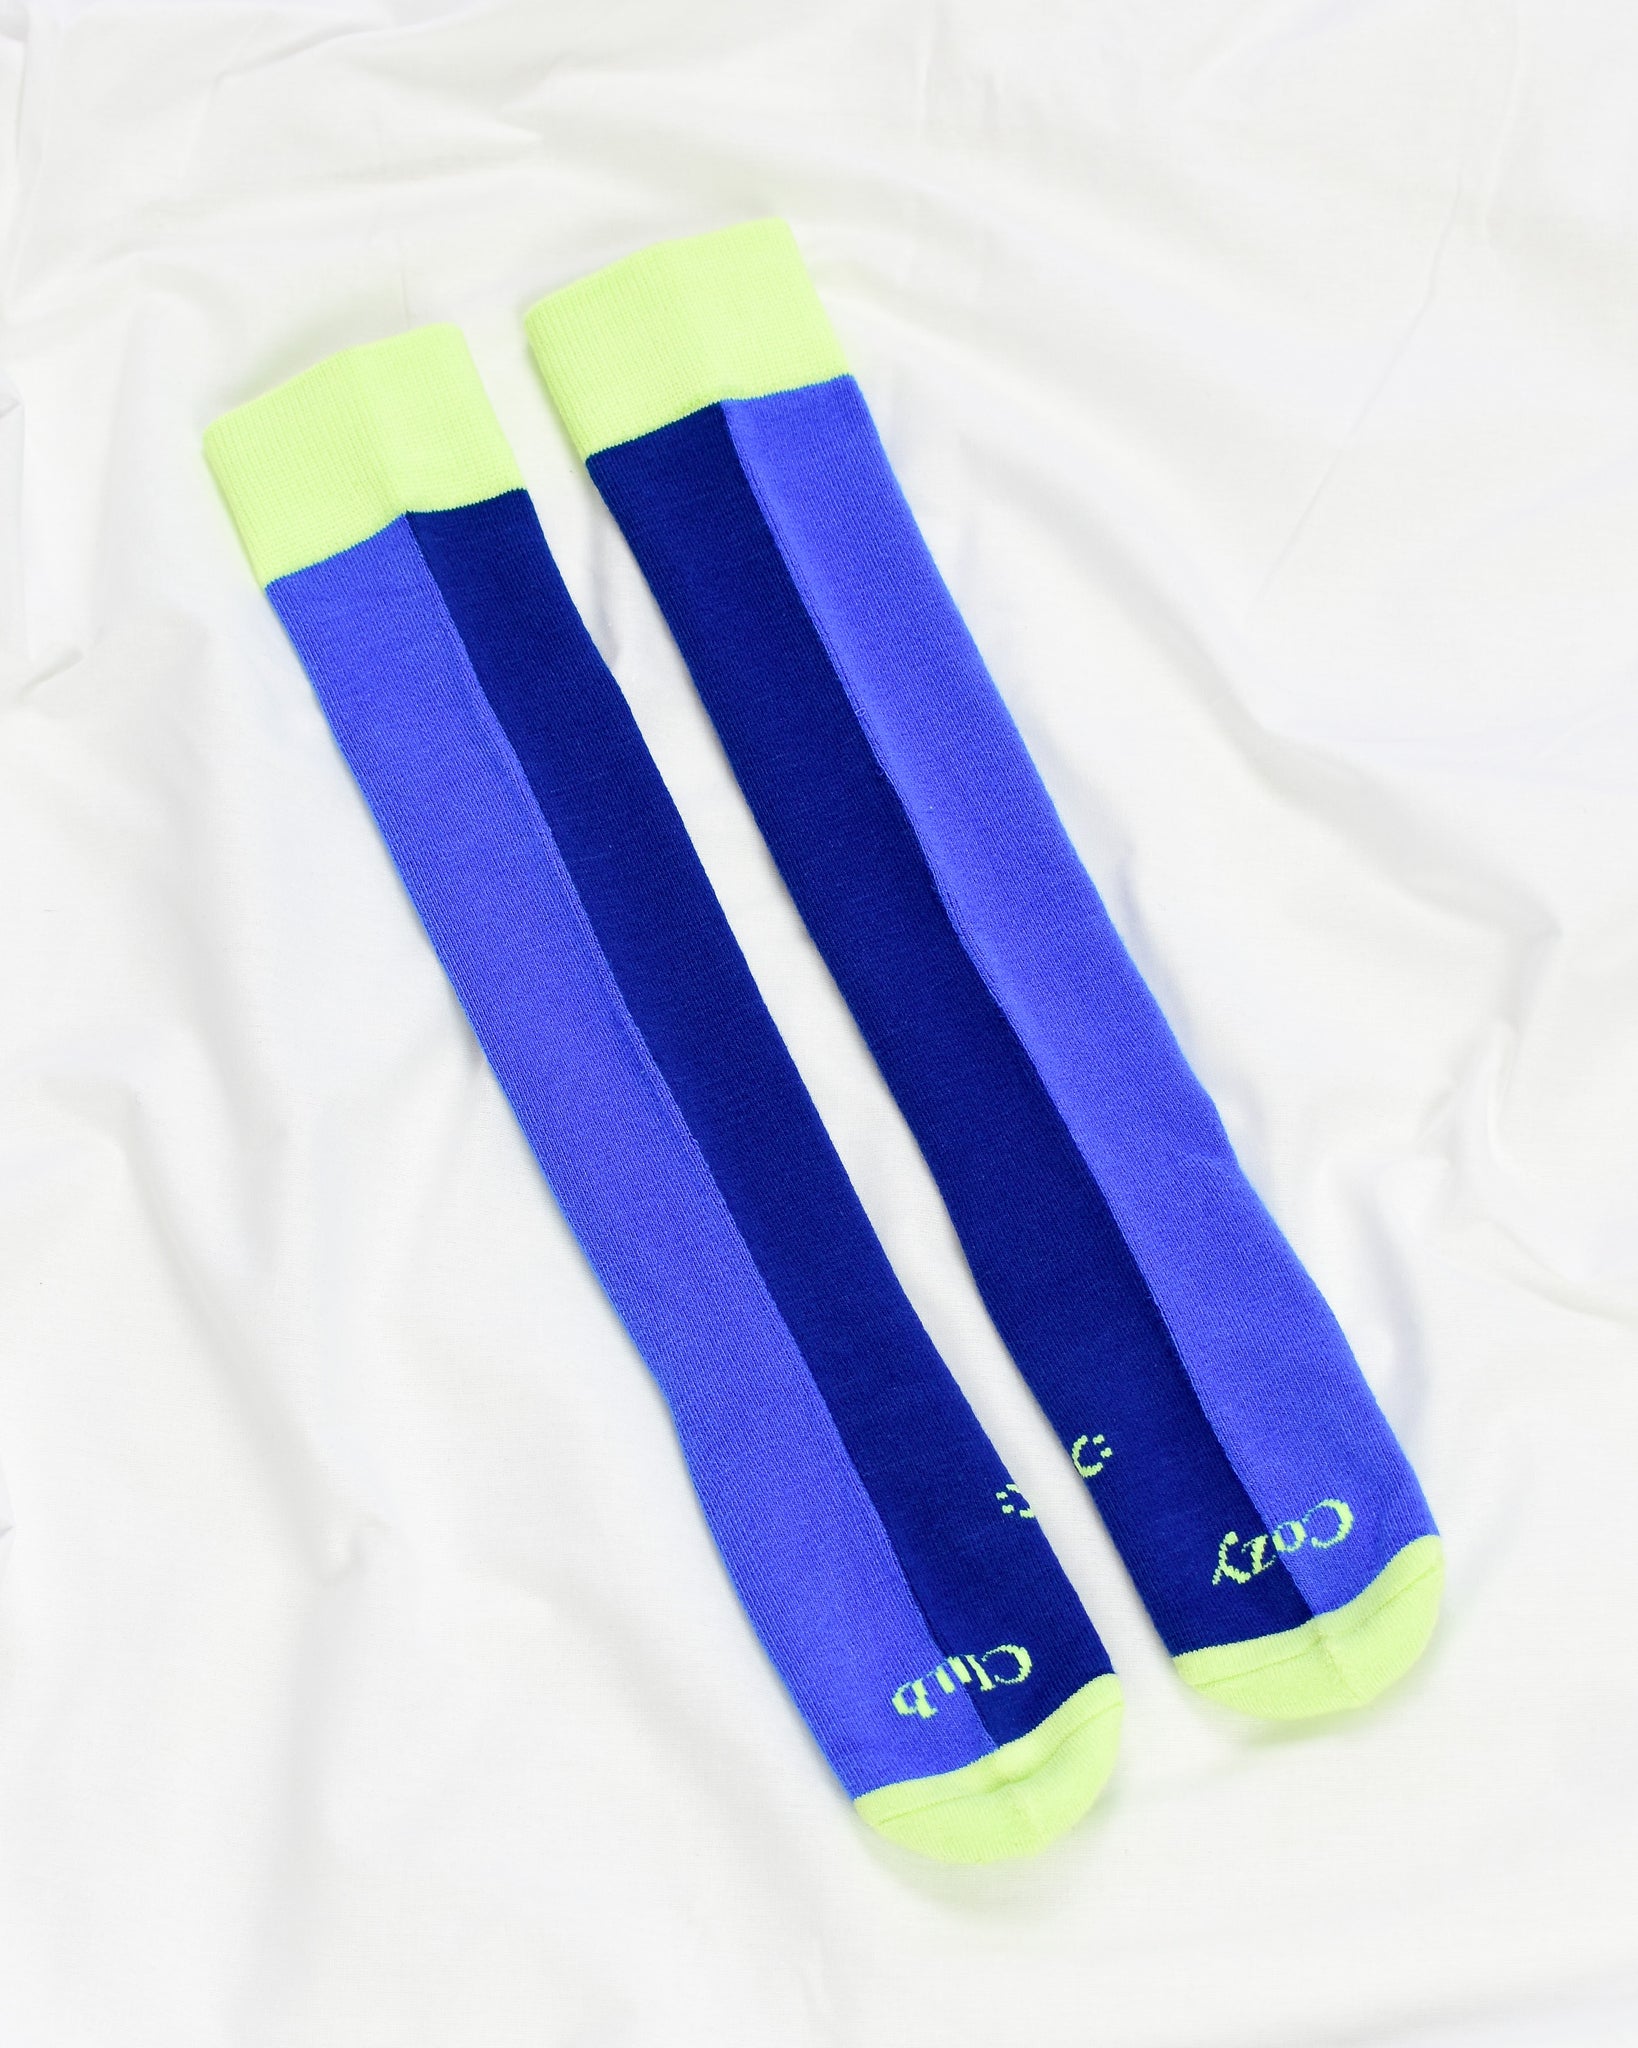 Everyday Knee-High Seamless Feel Socks 4 Pack (Kids) - White/Marine Blue